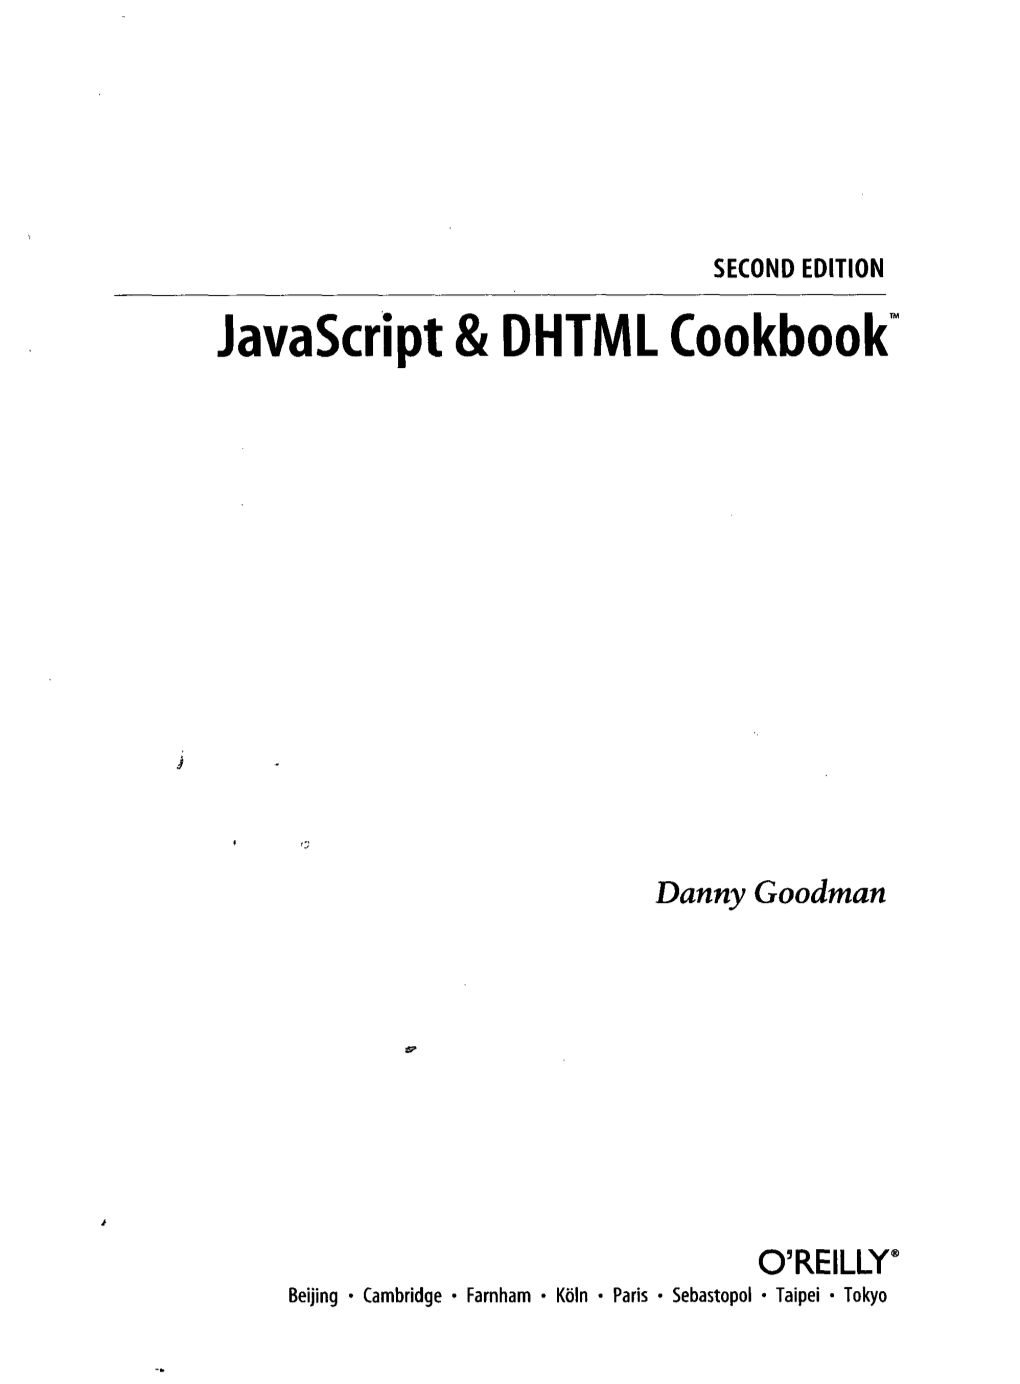 Javascript & DHTML Cookbook